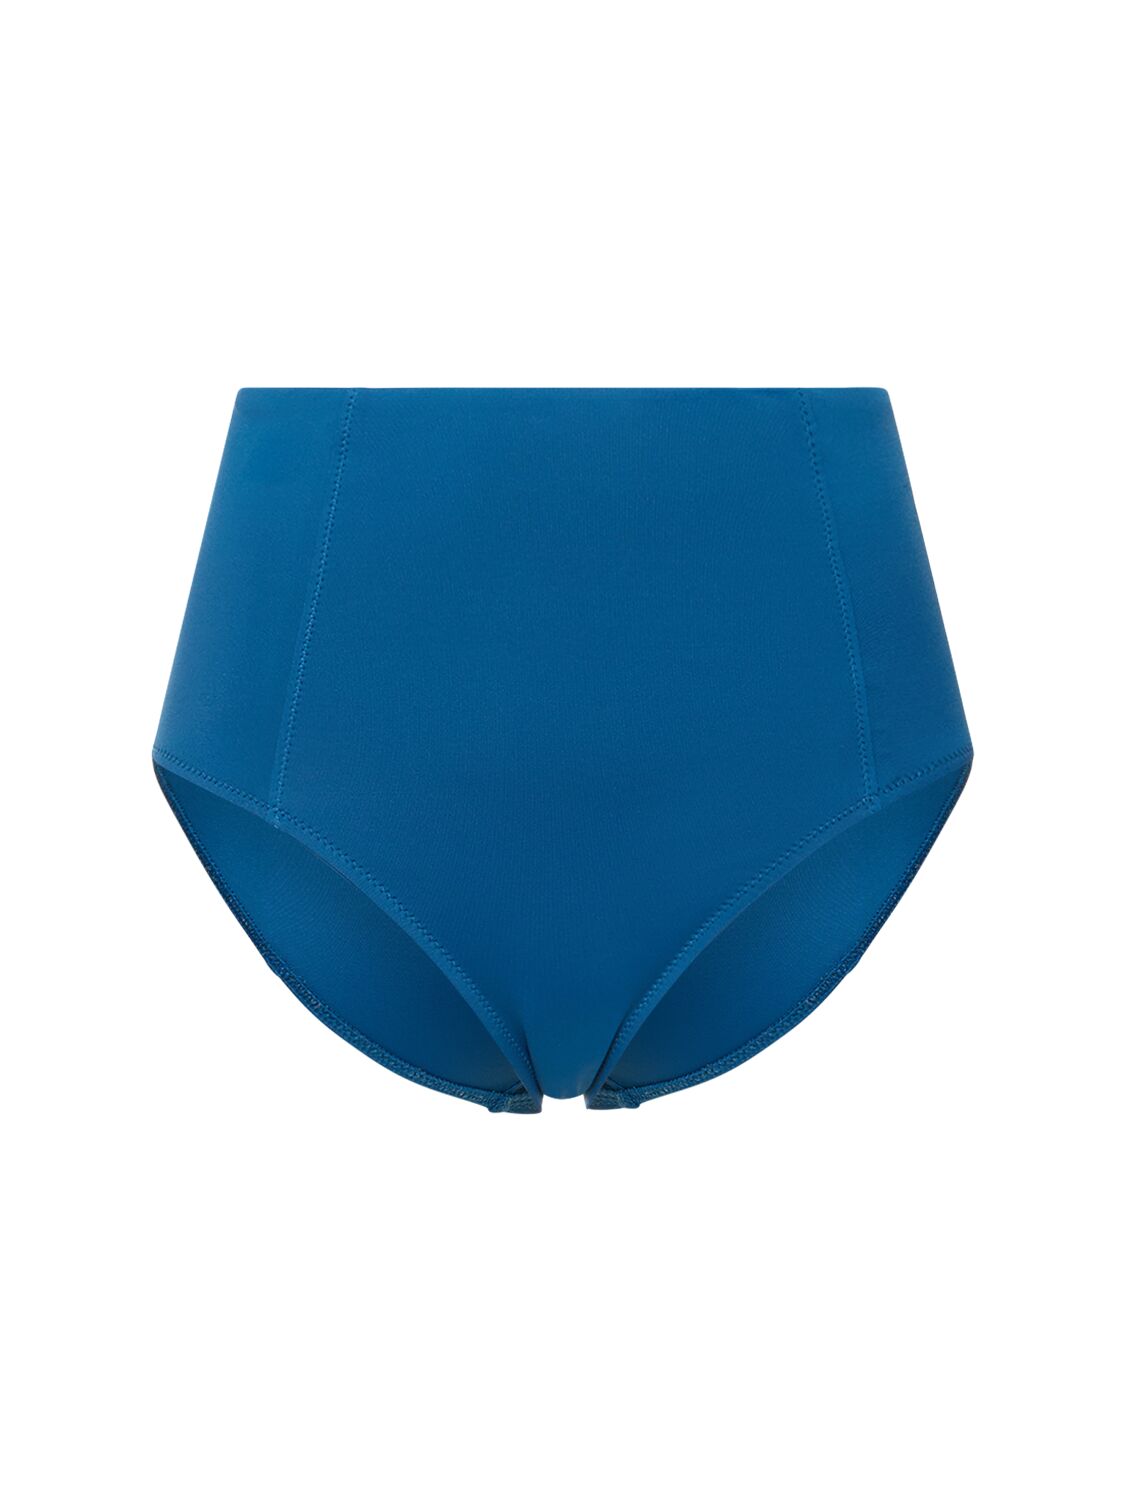 Ulla Johnson Zahara Stretch Tech Bikini Bottoms In Blue